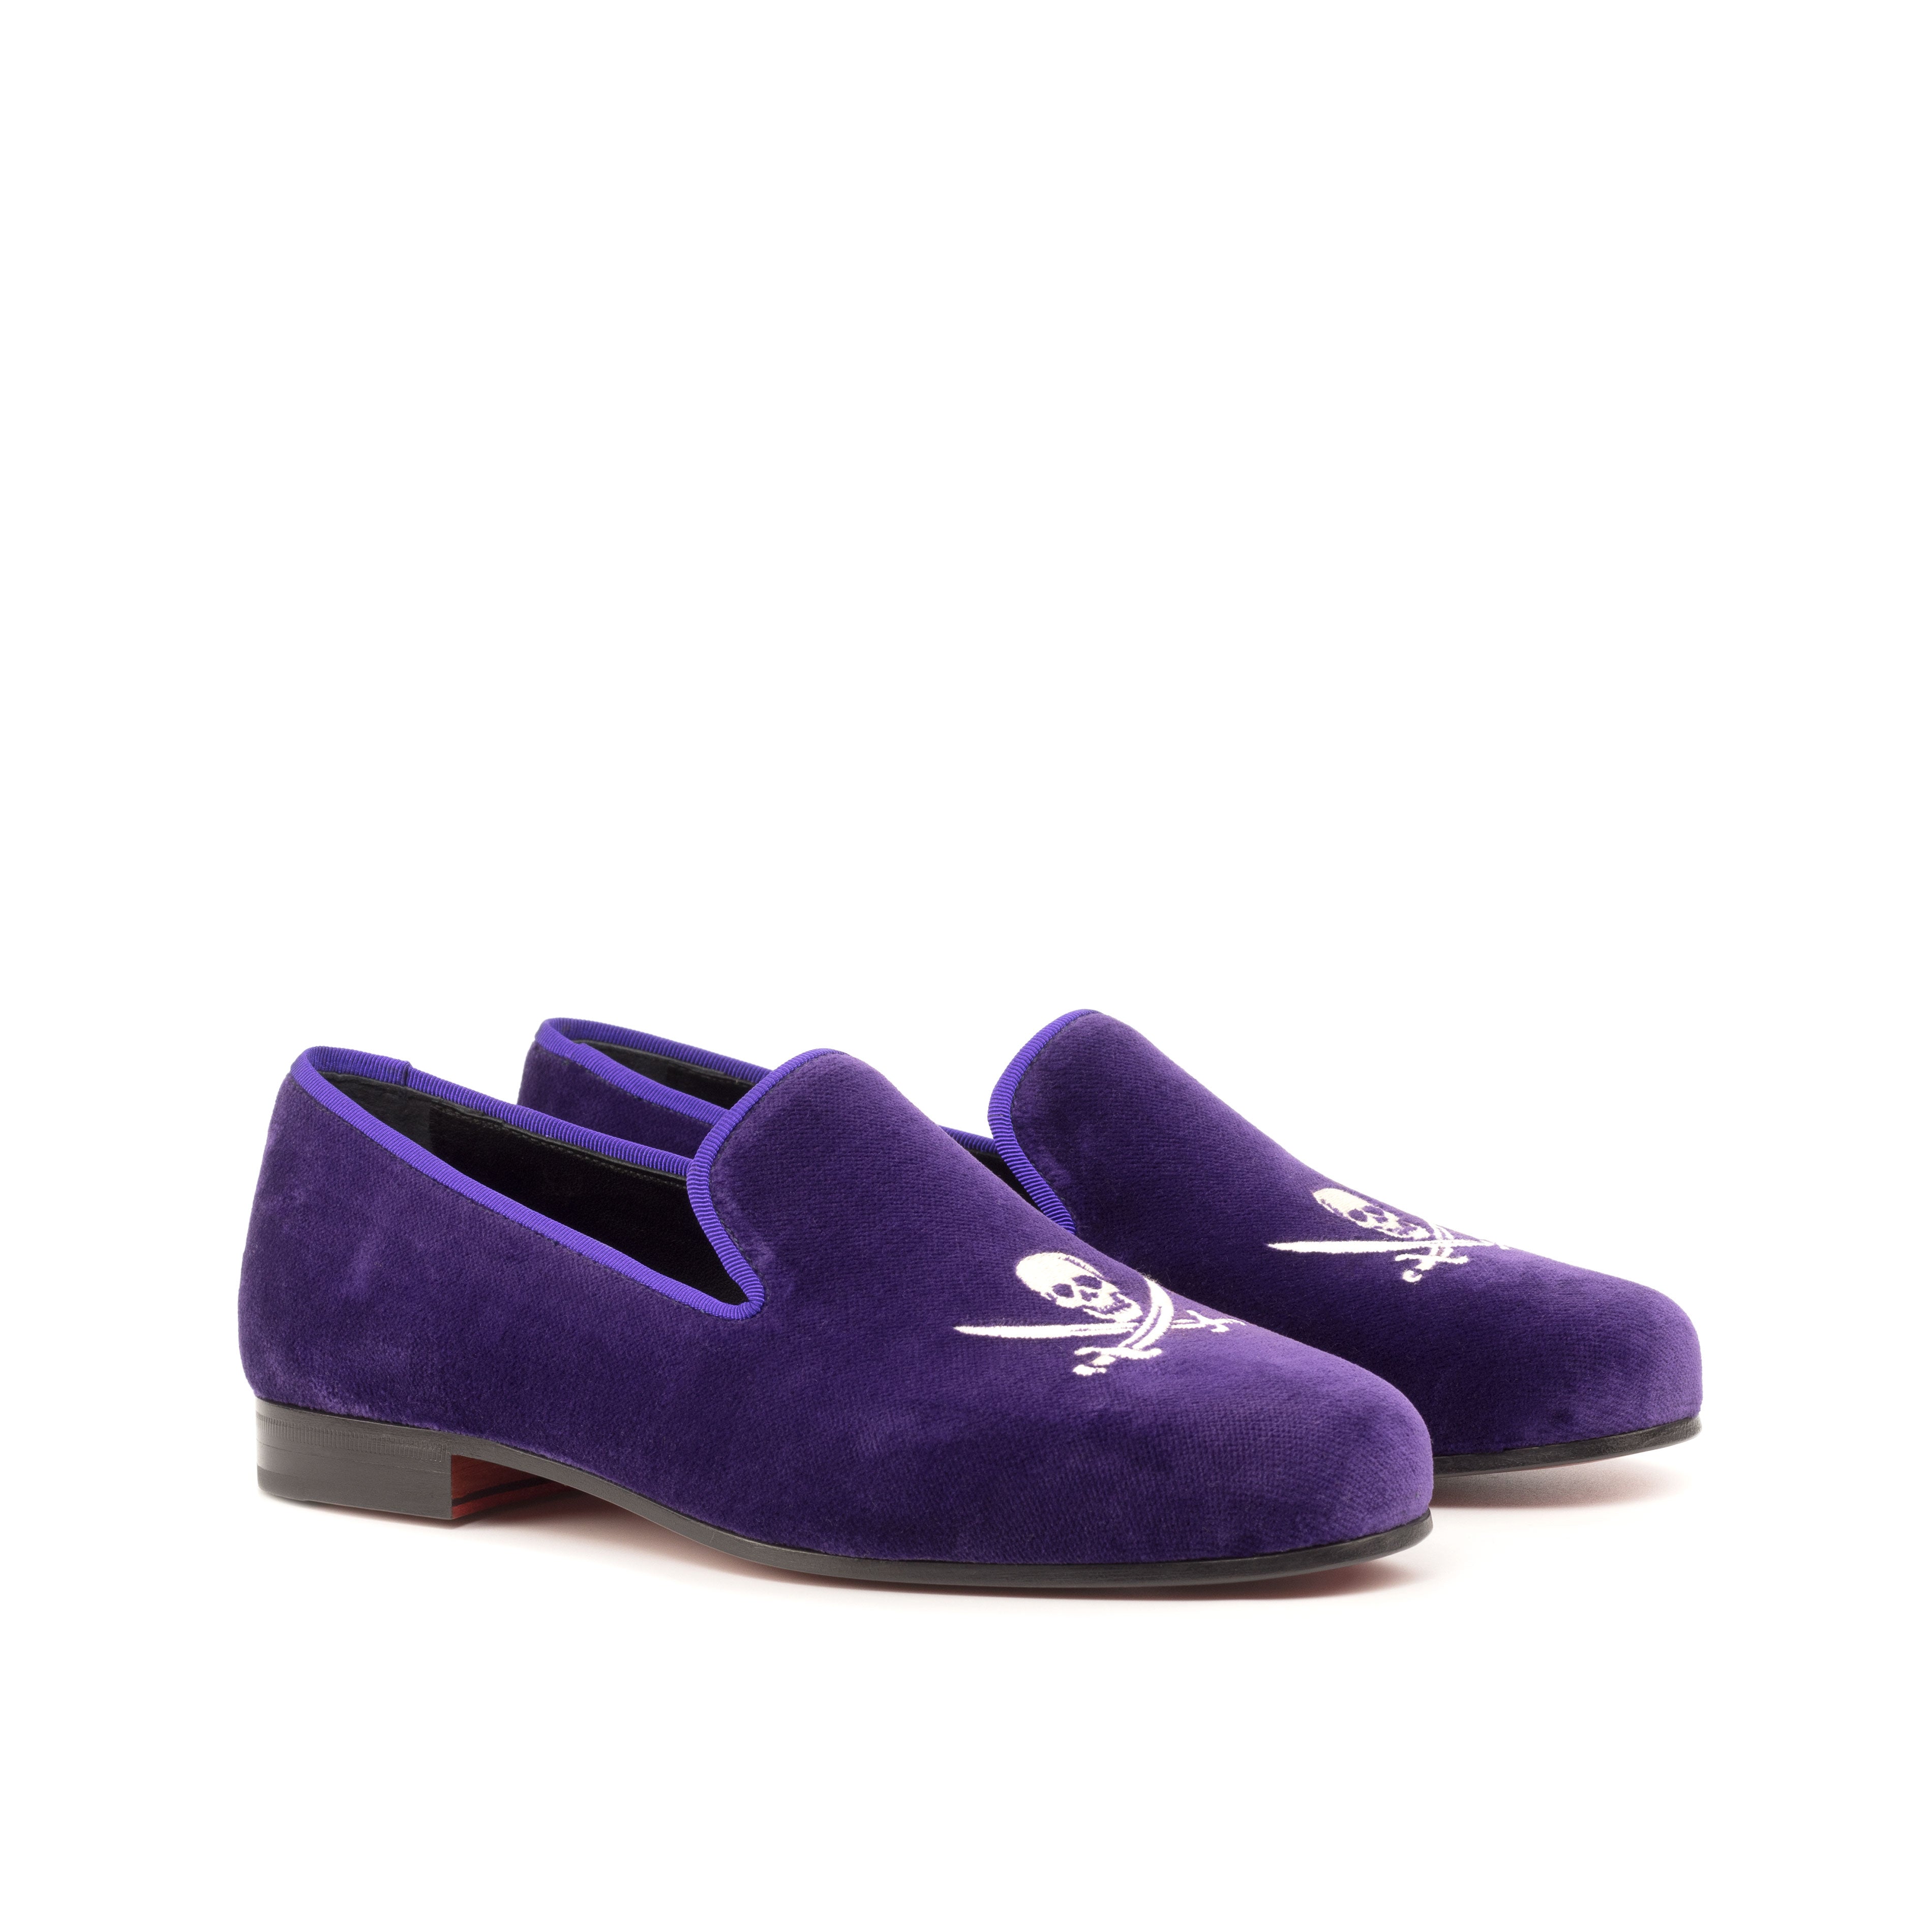 Custom velvet slippers producer